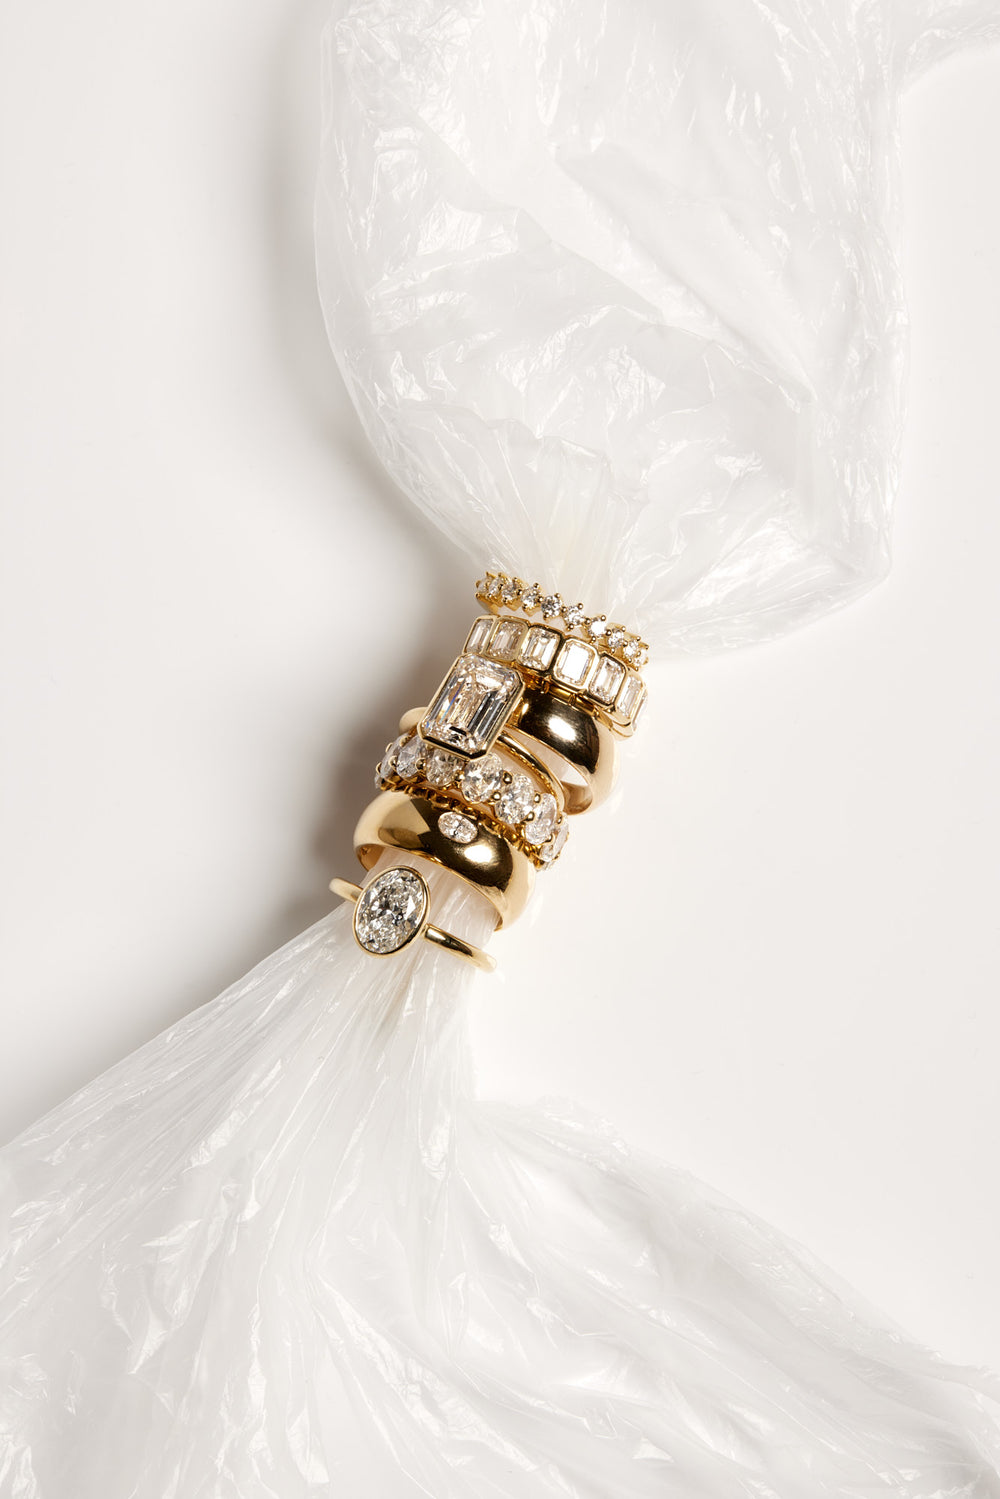 Blob Ring with Diamond | Yellow Gold| Natasha Schweitzer